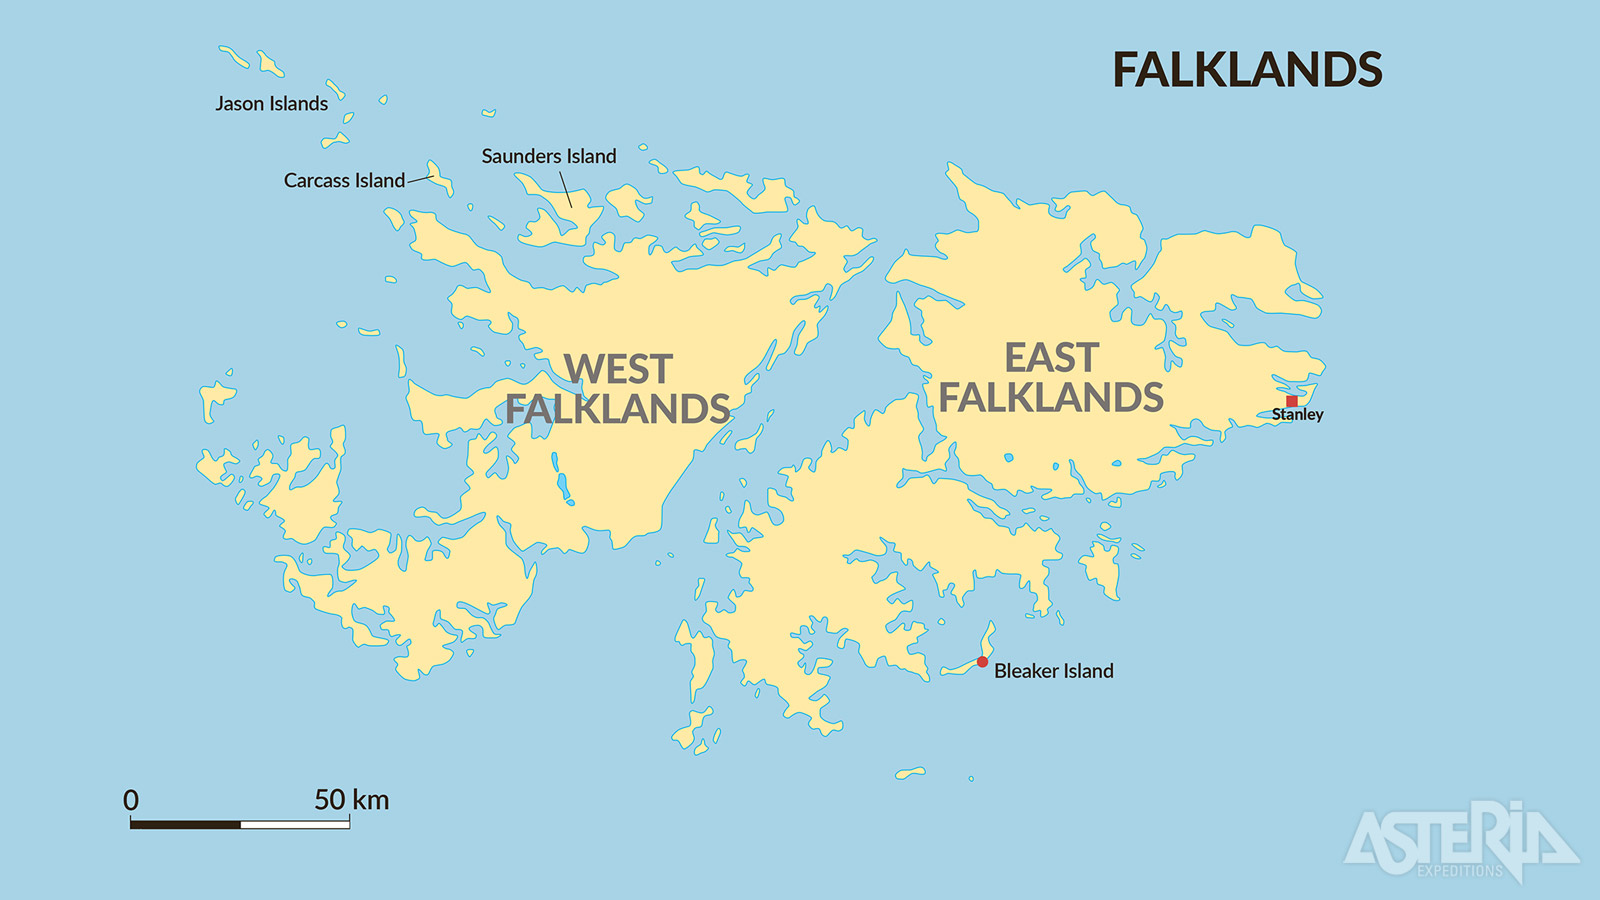 De Falklandeilanden staan bekend om hun dramatische landschappen, rijke biodiversiteit en complexe geopolitieke geschiedenis